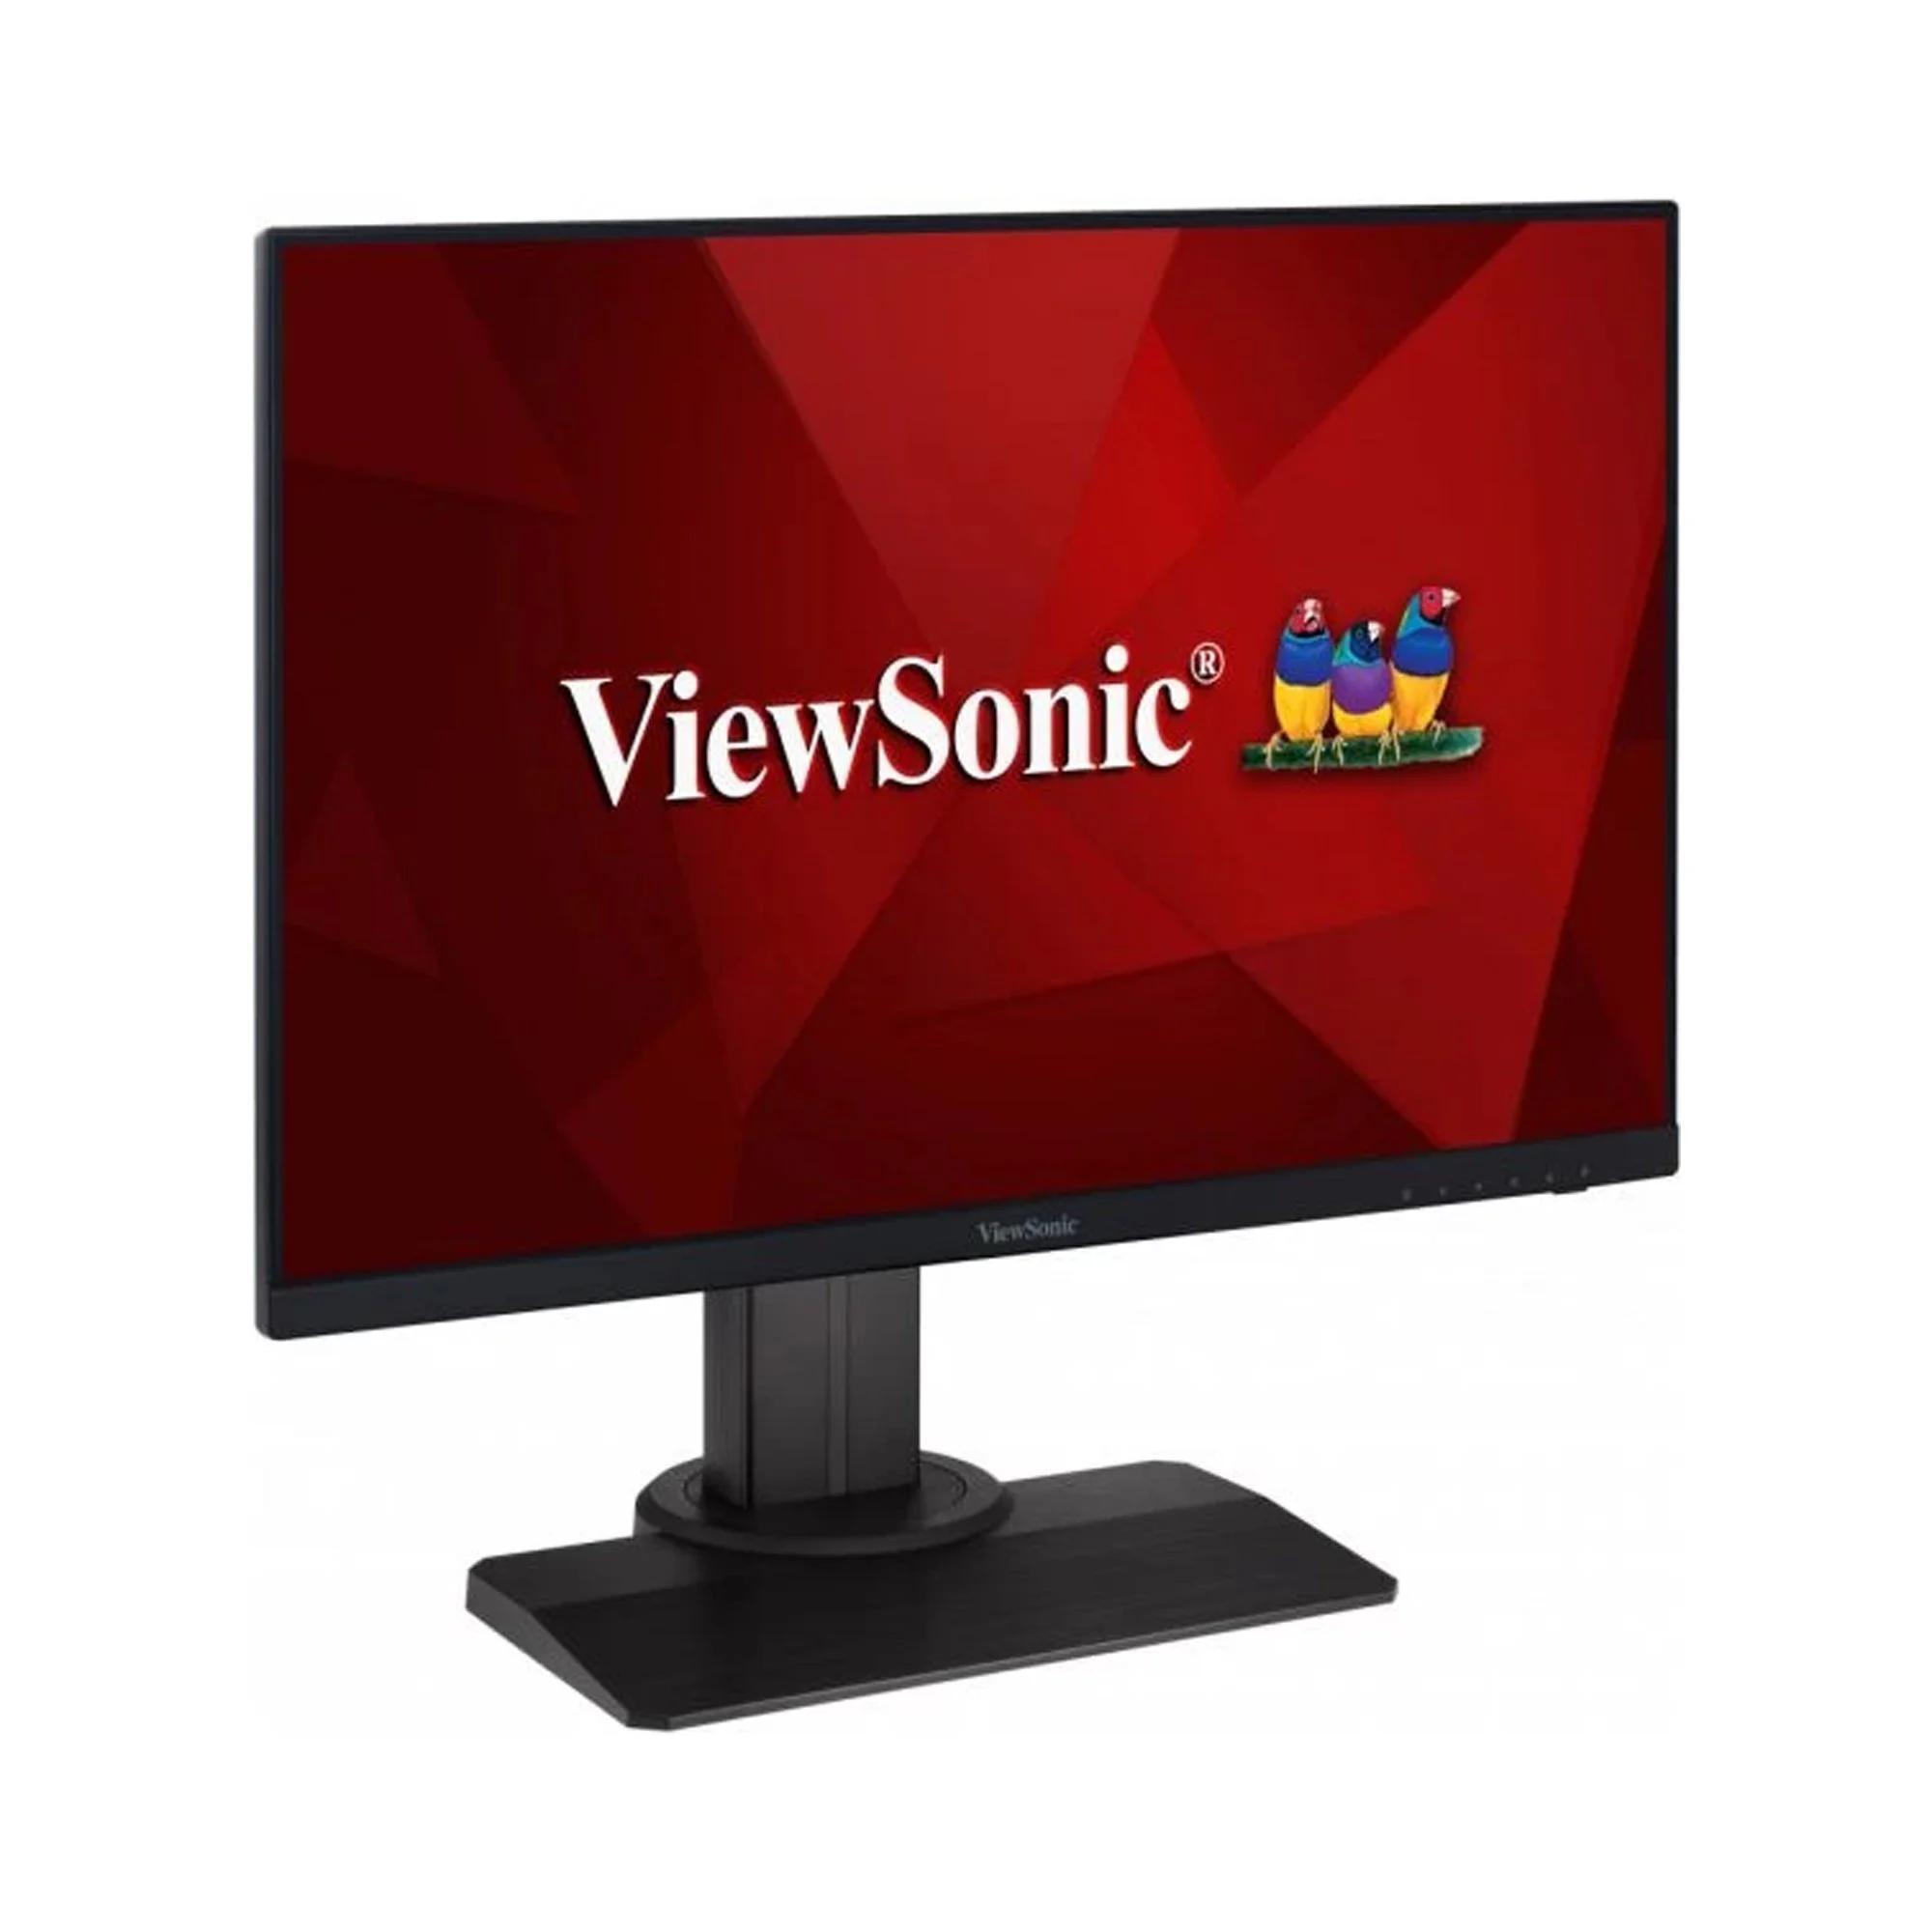 Màn hình máy tính ViewSonic XG2431 - 23.8inch